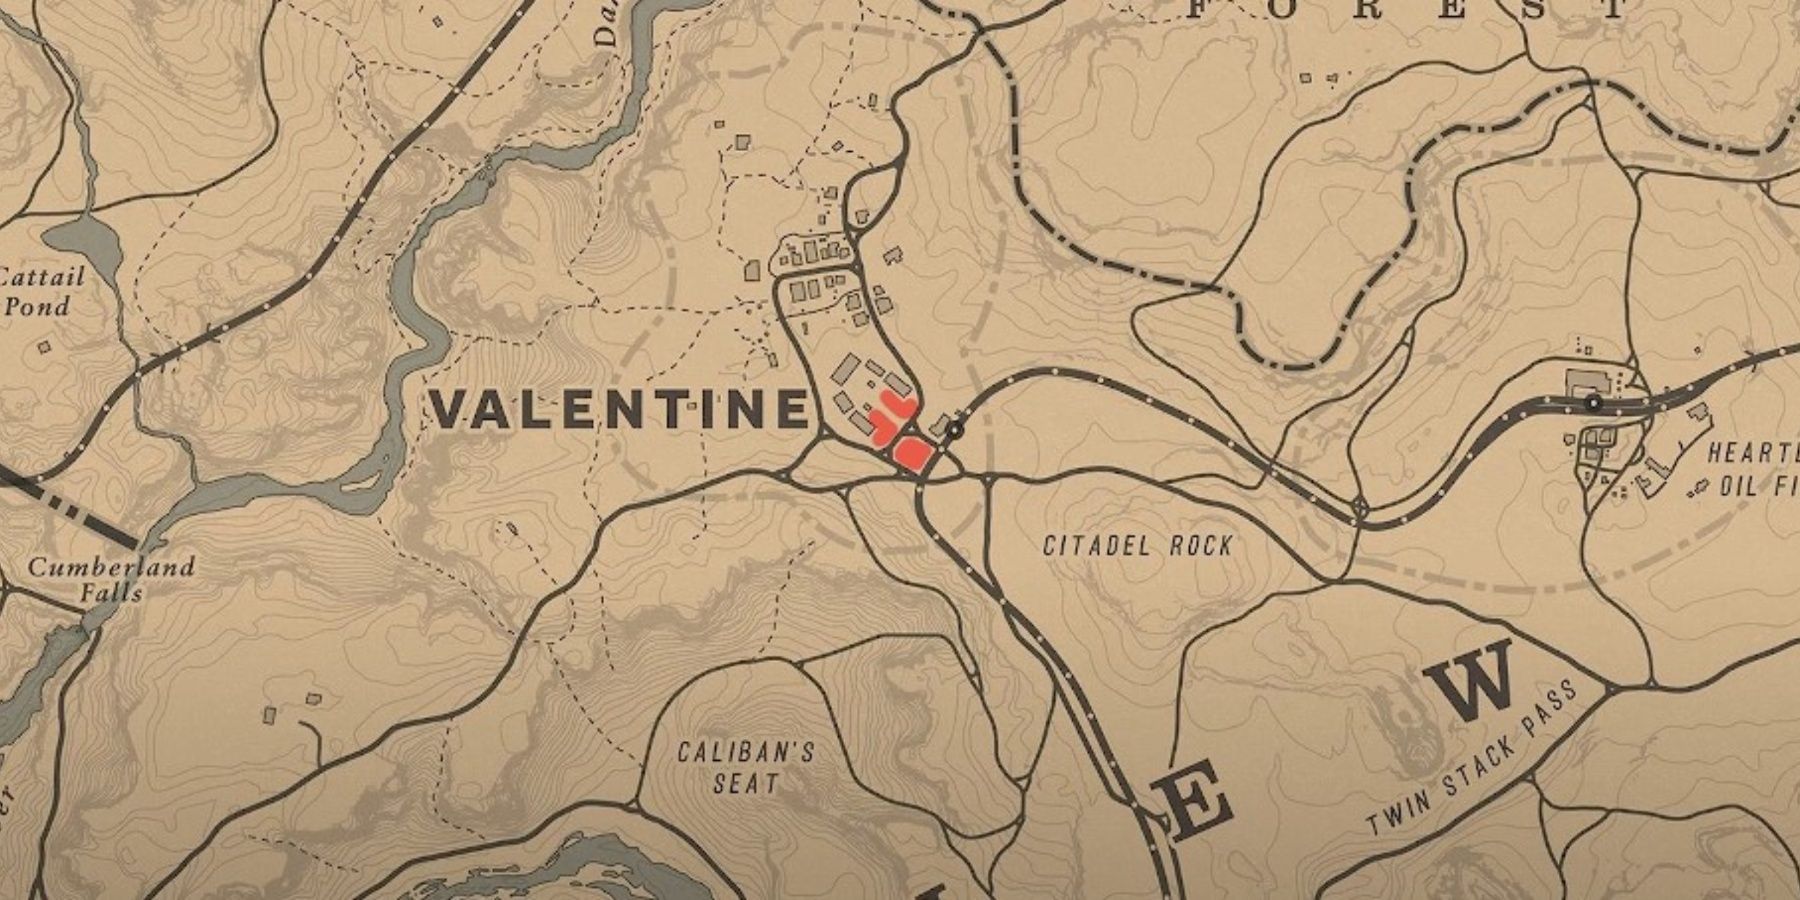 Red Dead Online Valentine Merino Sheep Location